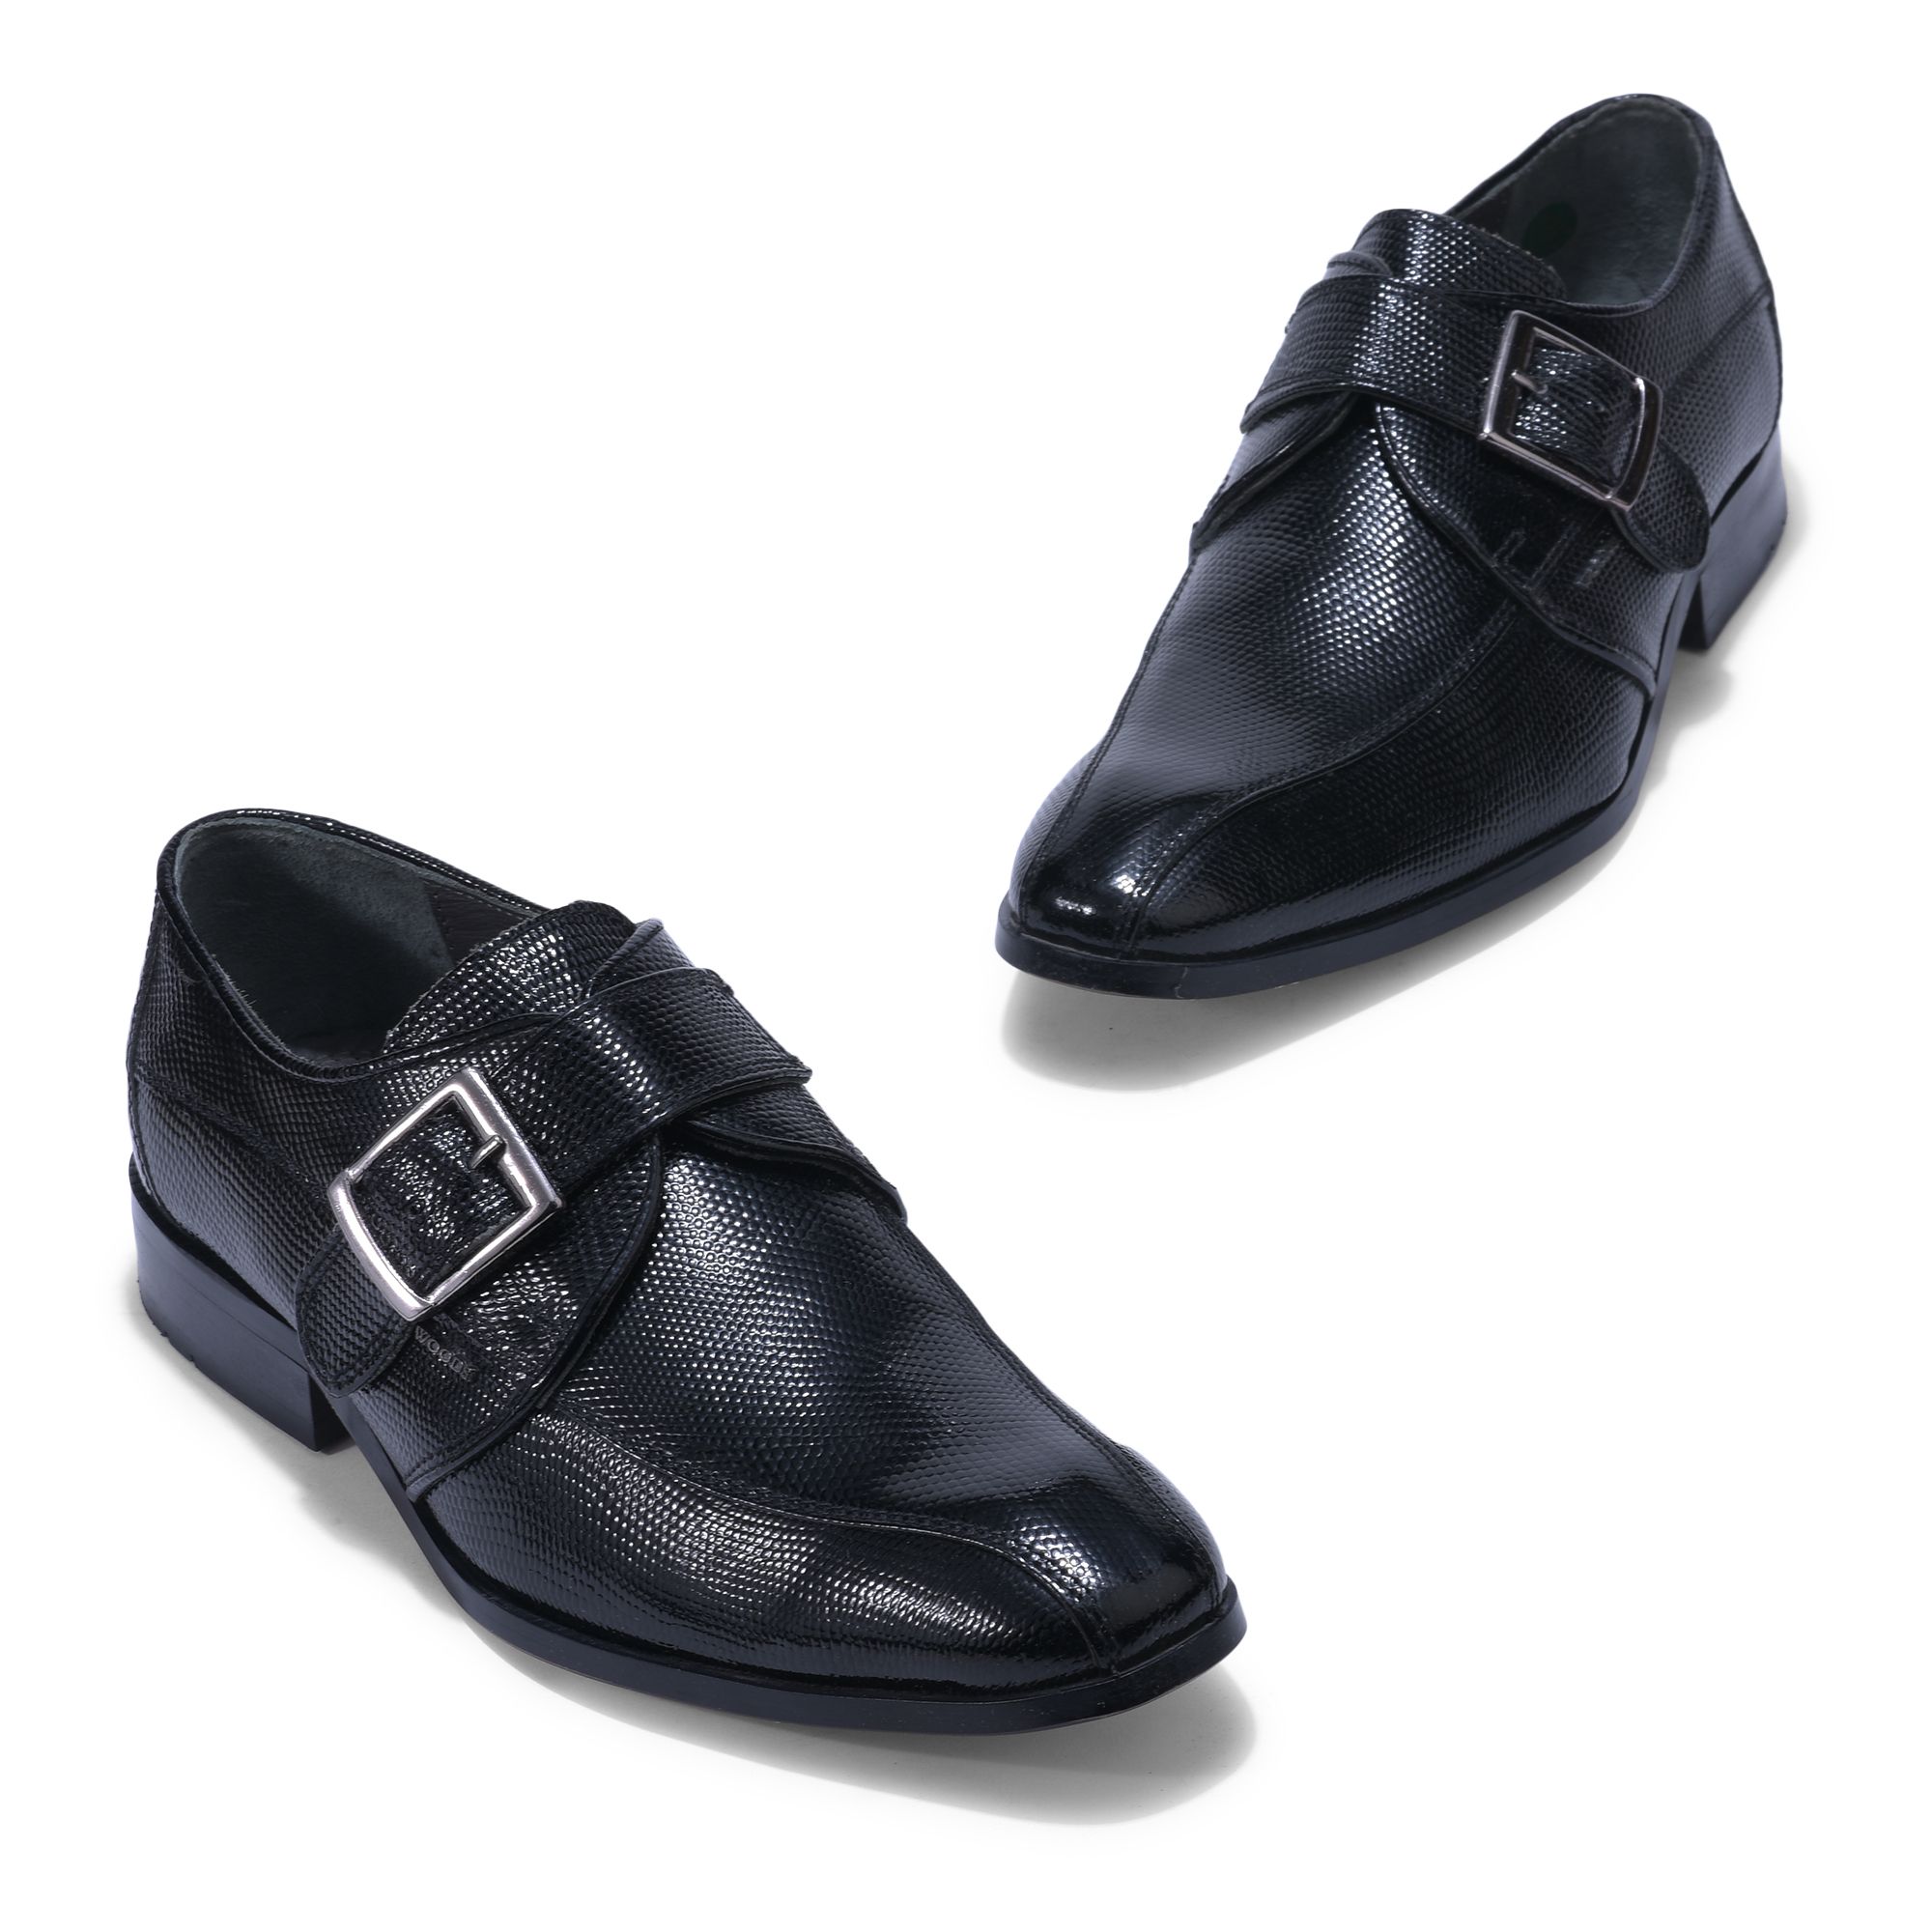 Black monk strap shoe